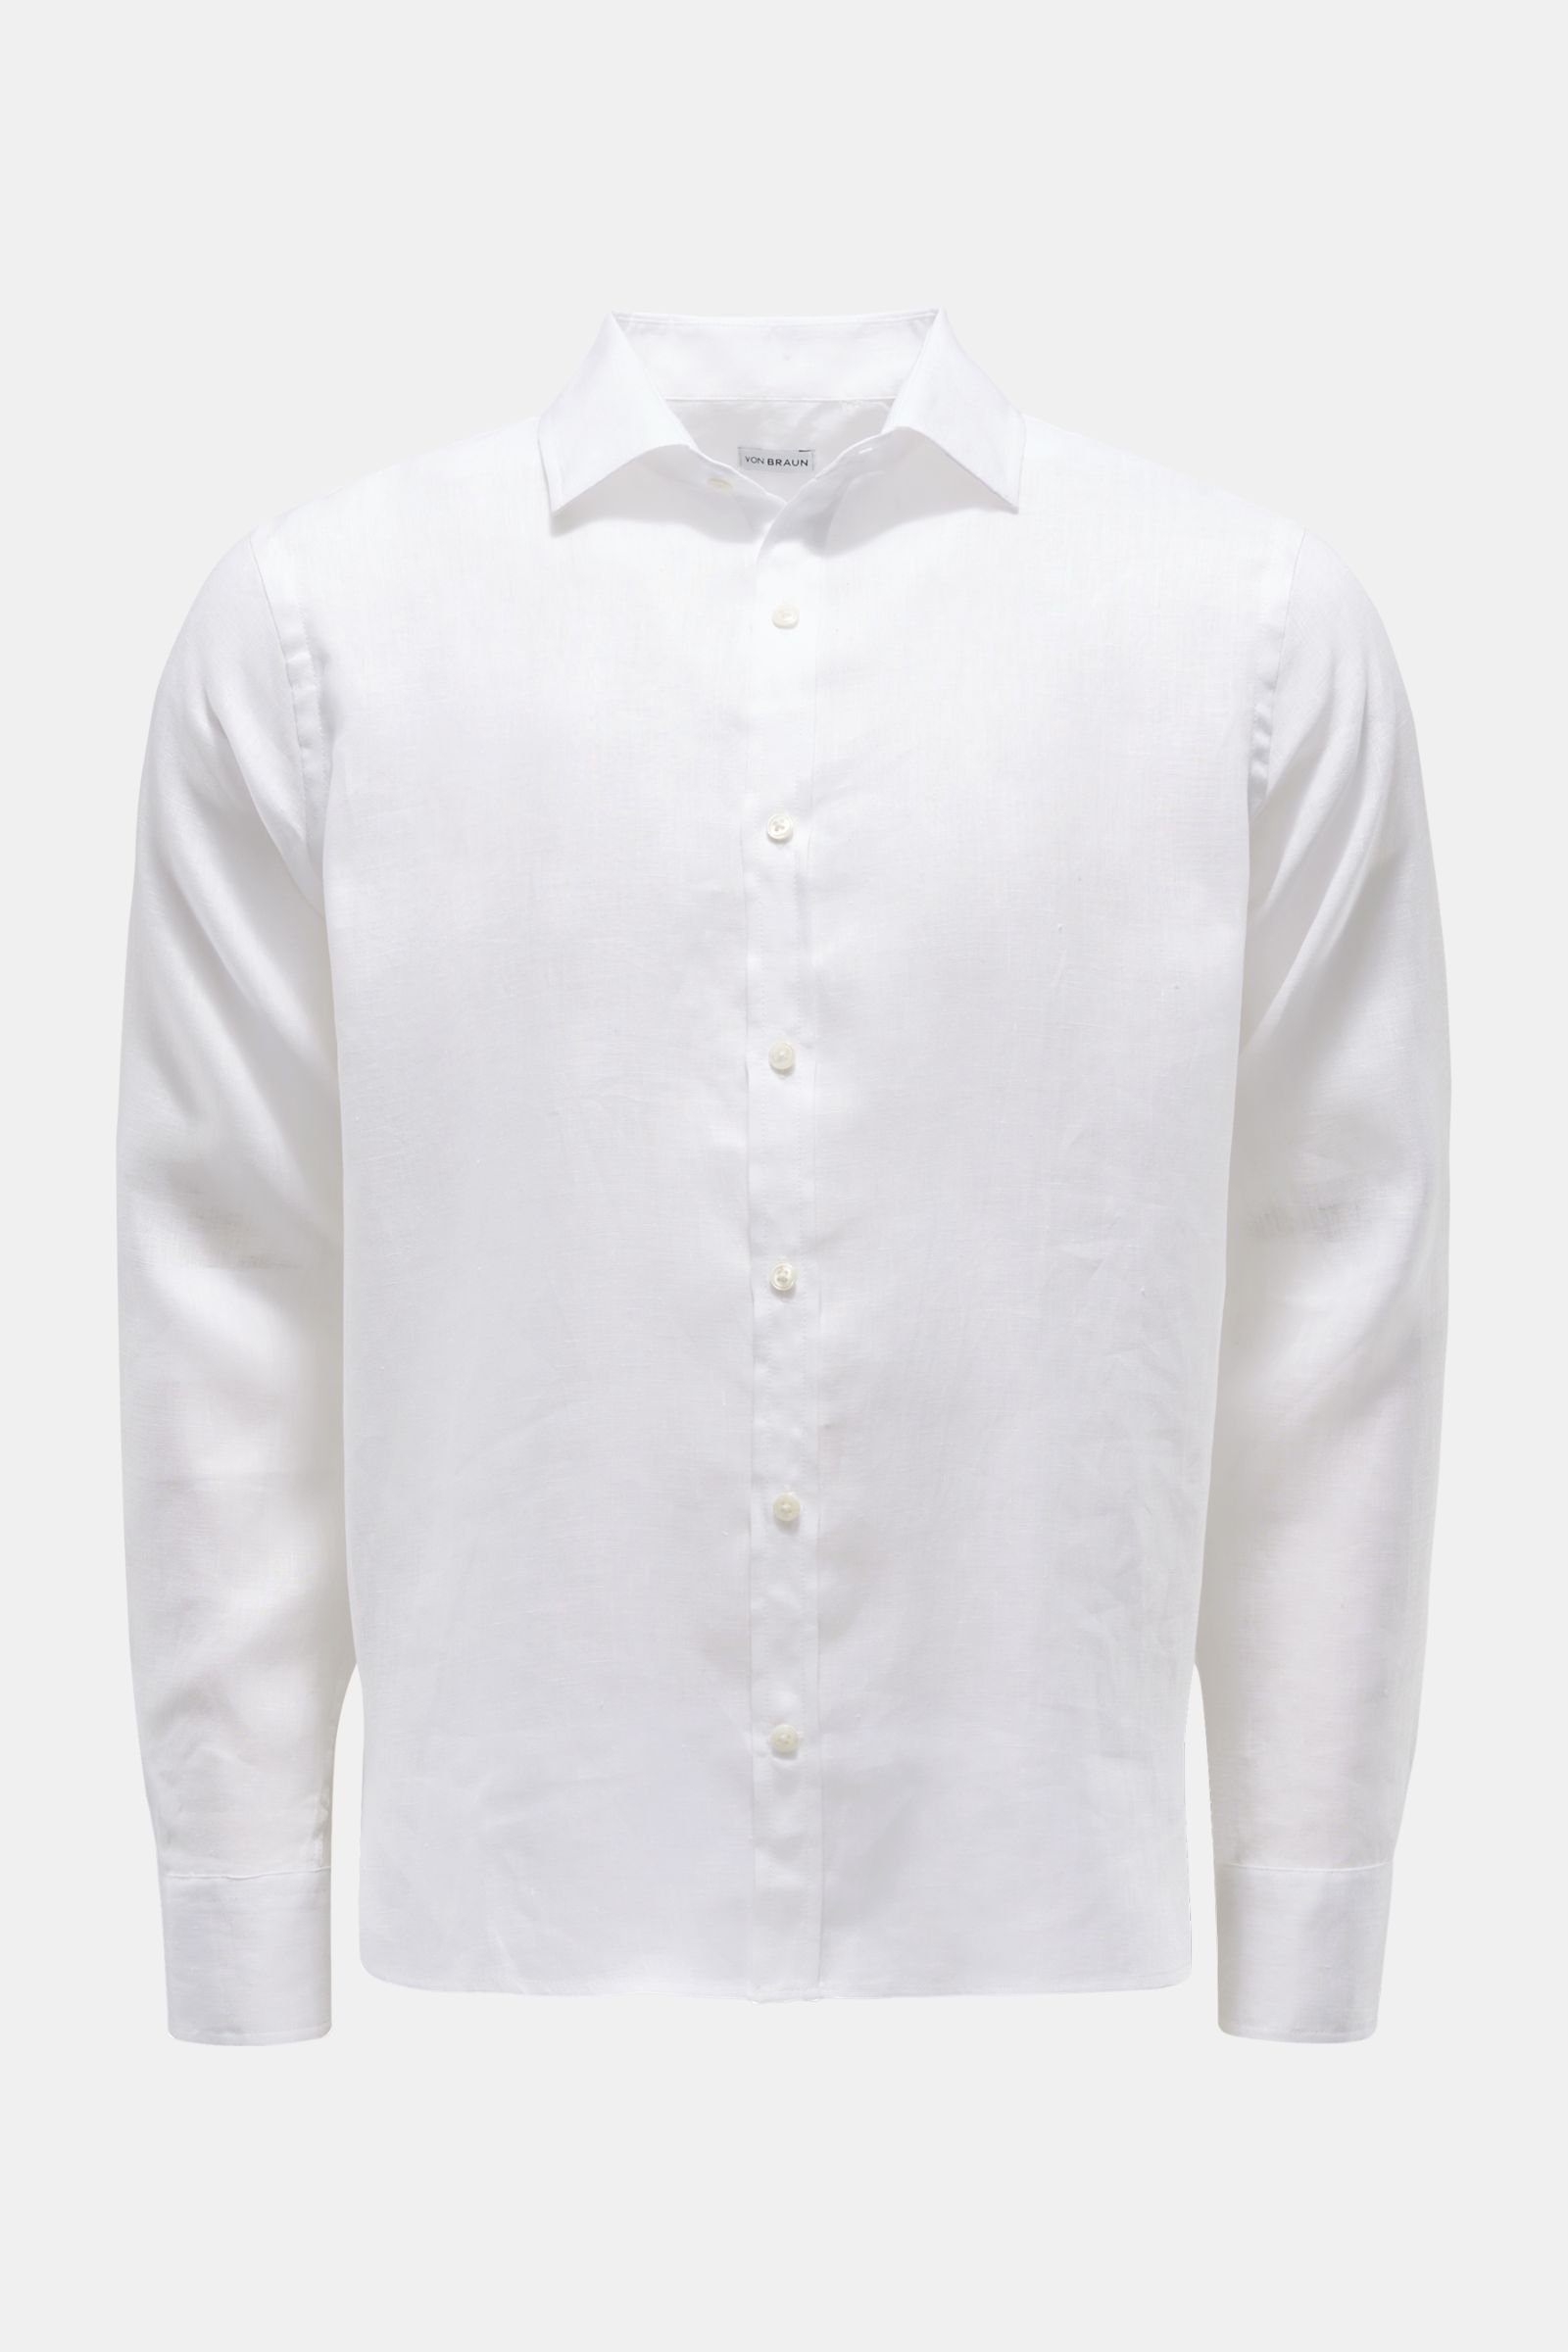 Linen shirt Kent collar white